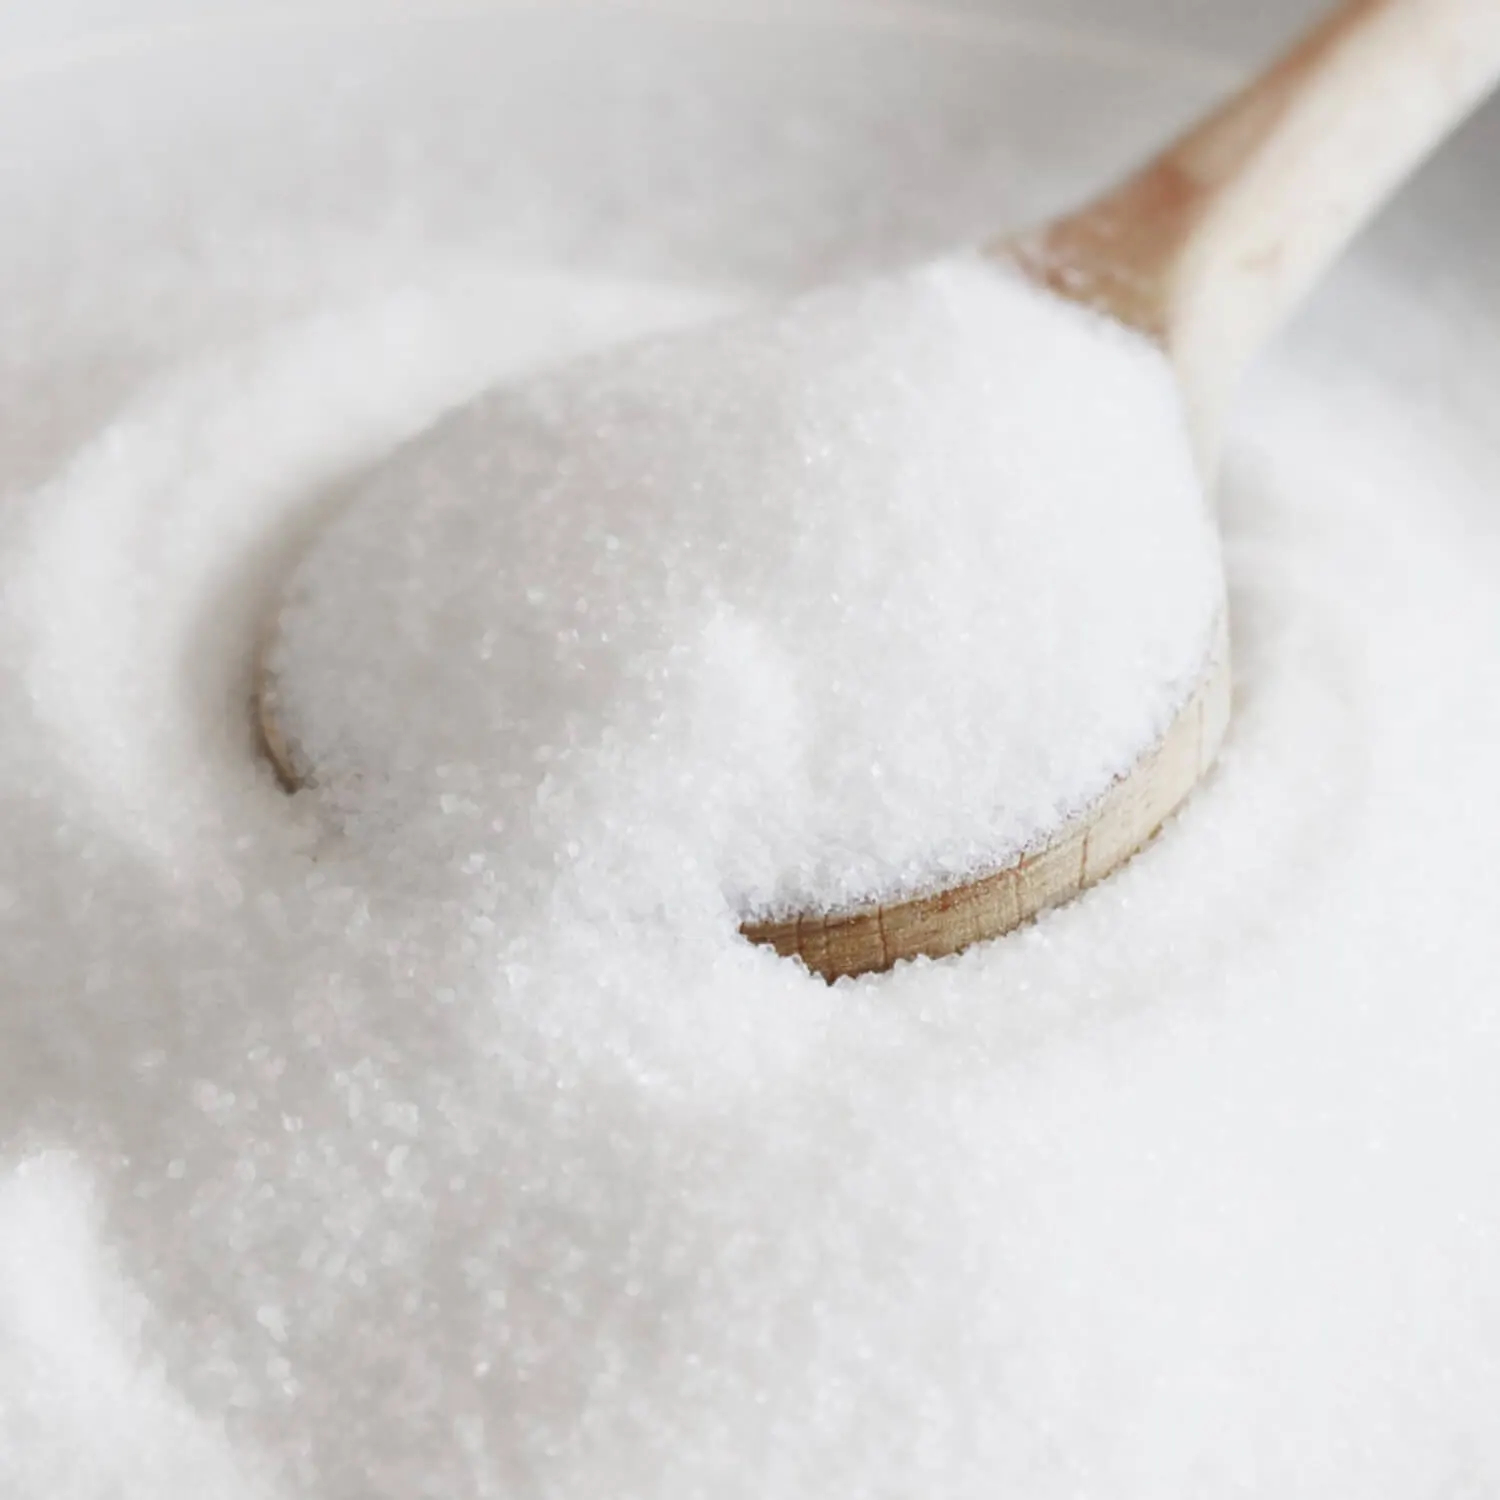 Erythrit ist eine süß schmeckende Verbindung, die chemisch gesehen zu den Zuckeralkoholen gehört.